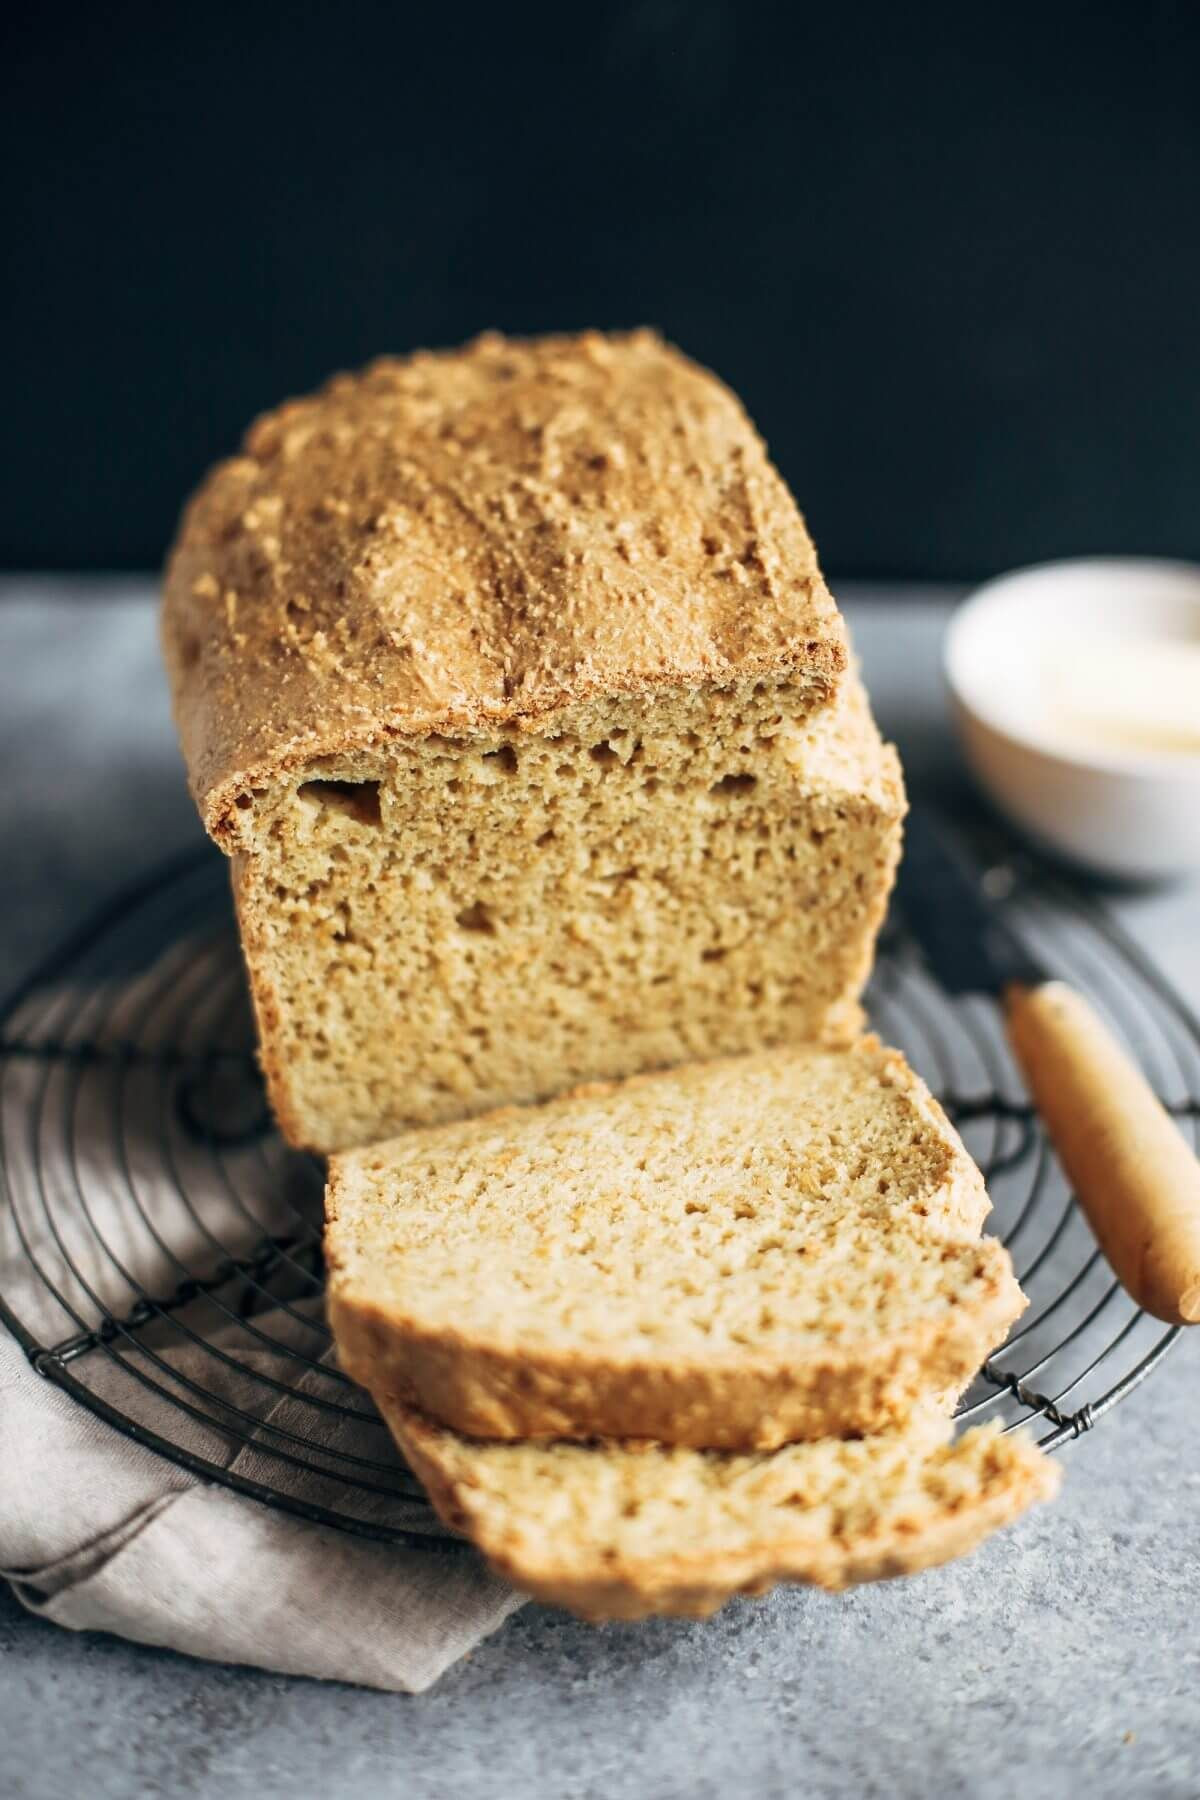 Keto Sandwich Bread Ideas
 Best Keto Gluten Free Bread Recipe in 2019